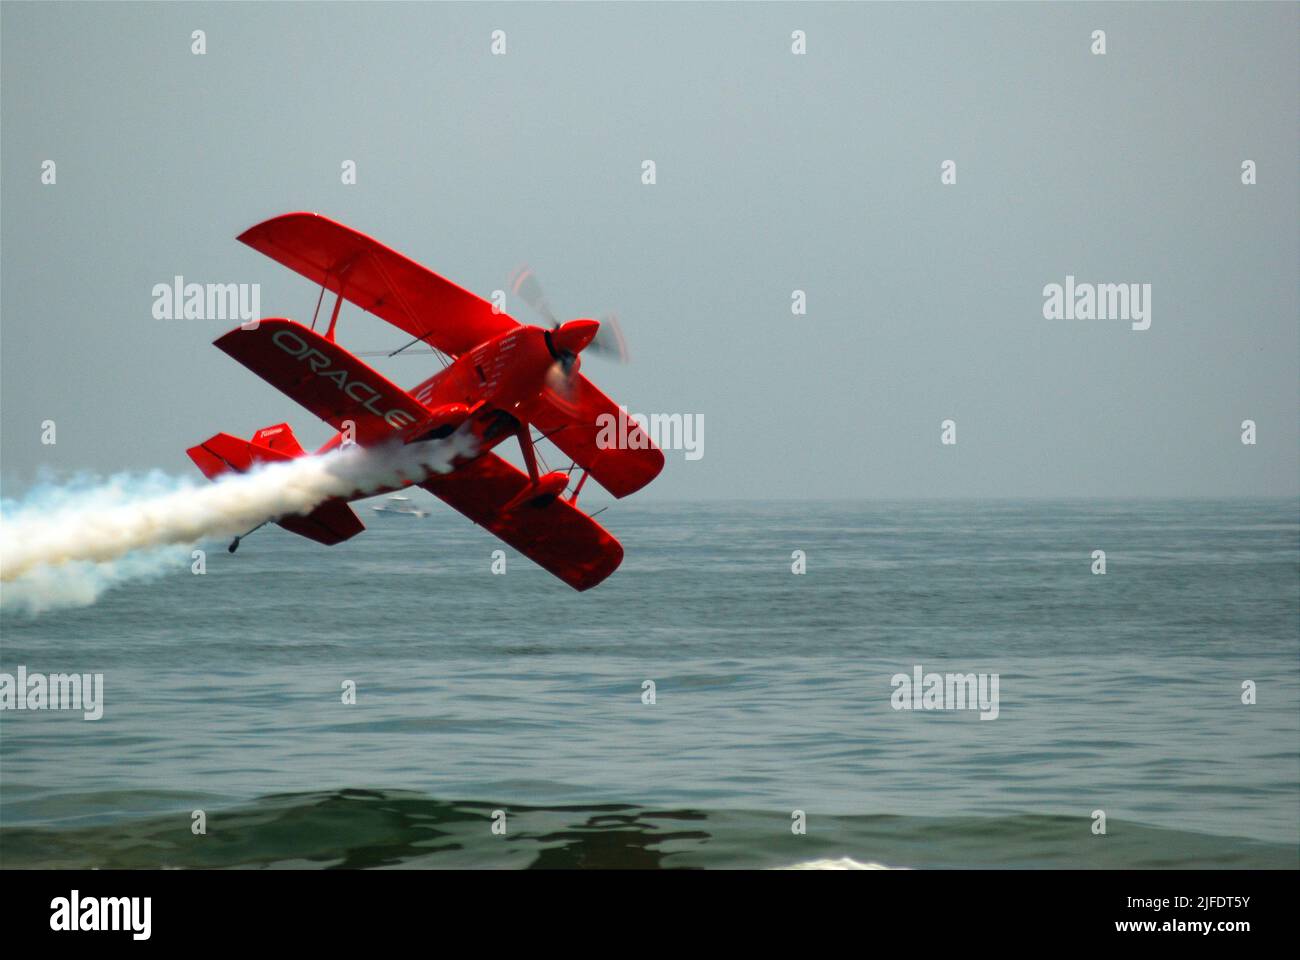 Ein Stuntpilot fliegt sein Doppelflugzeug während einer Flugshow am Jones Beach, Long Island, gefährlich nahe am Meer Stockfoto